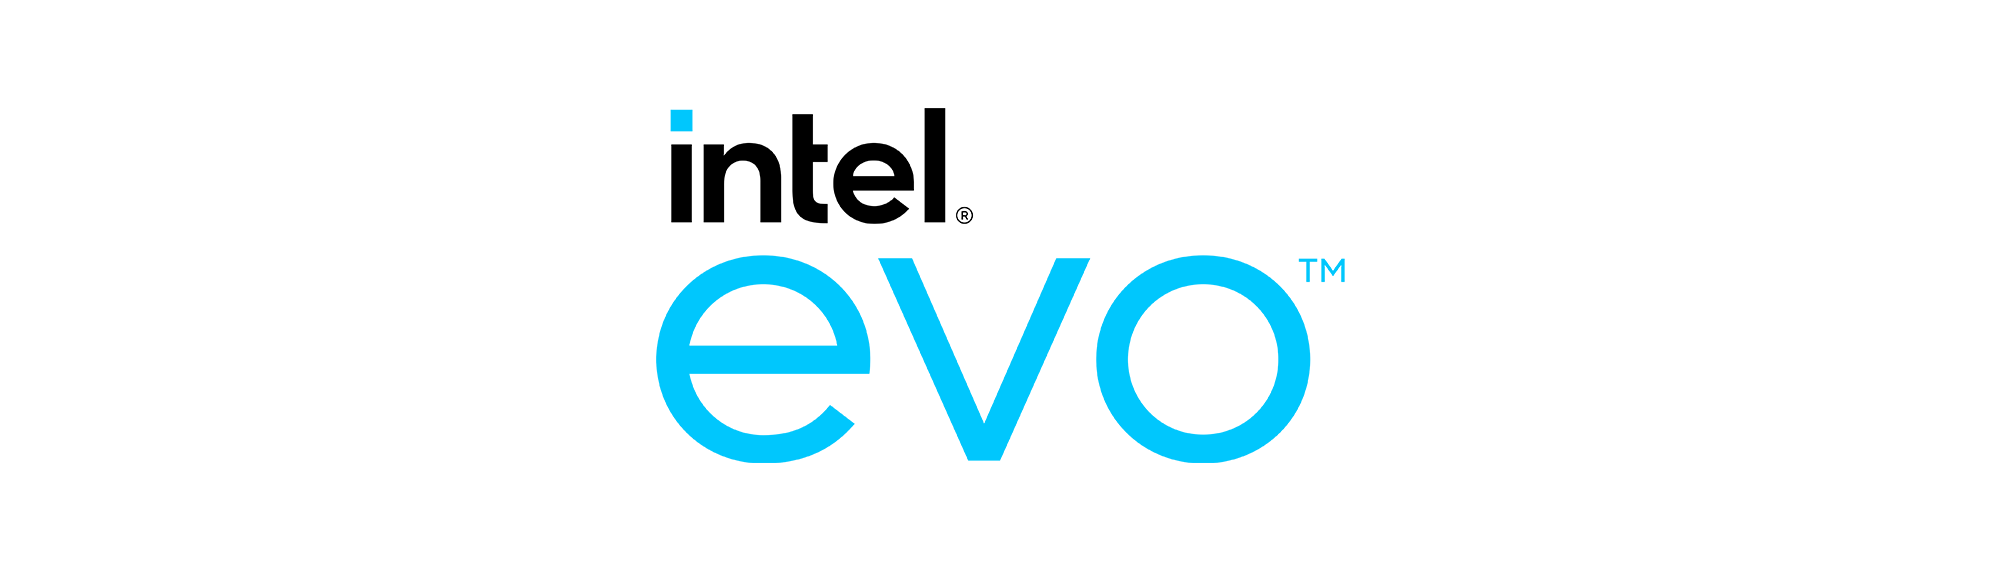 Logo Intel Evo